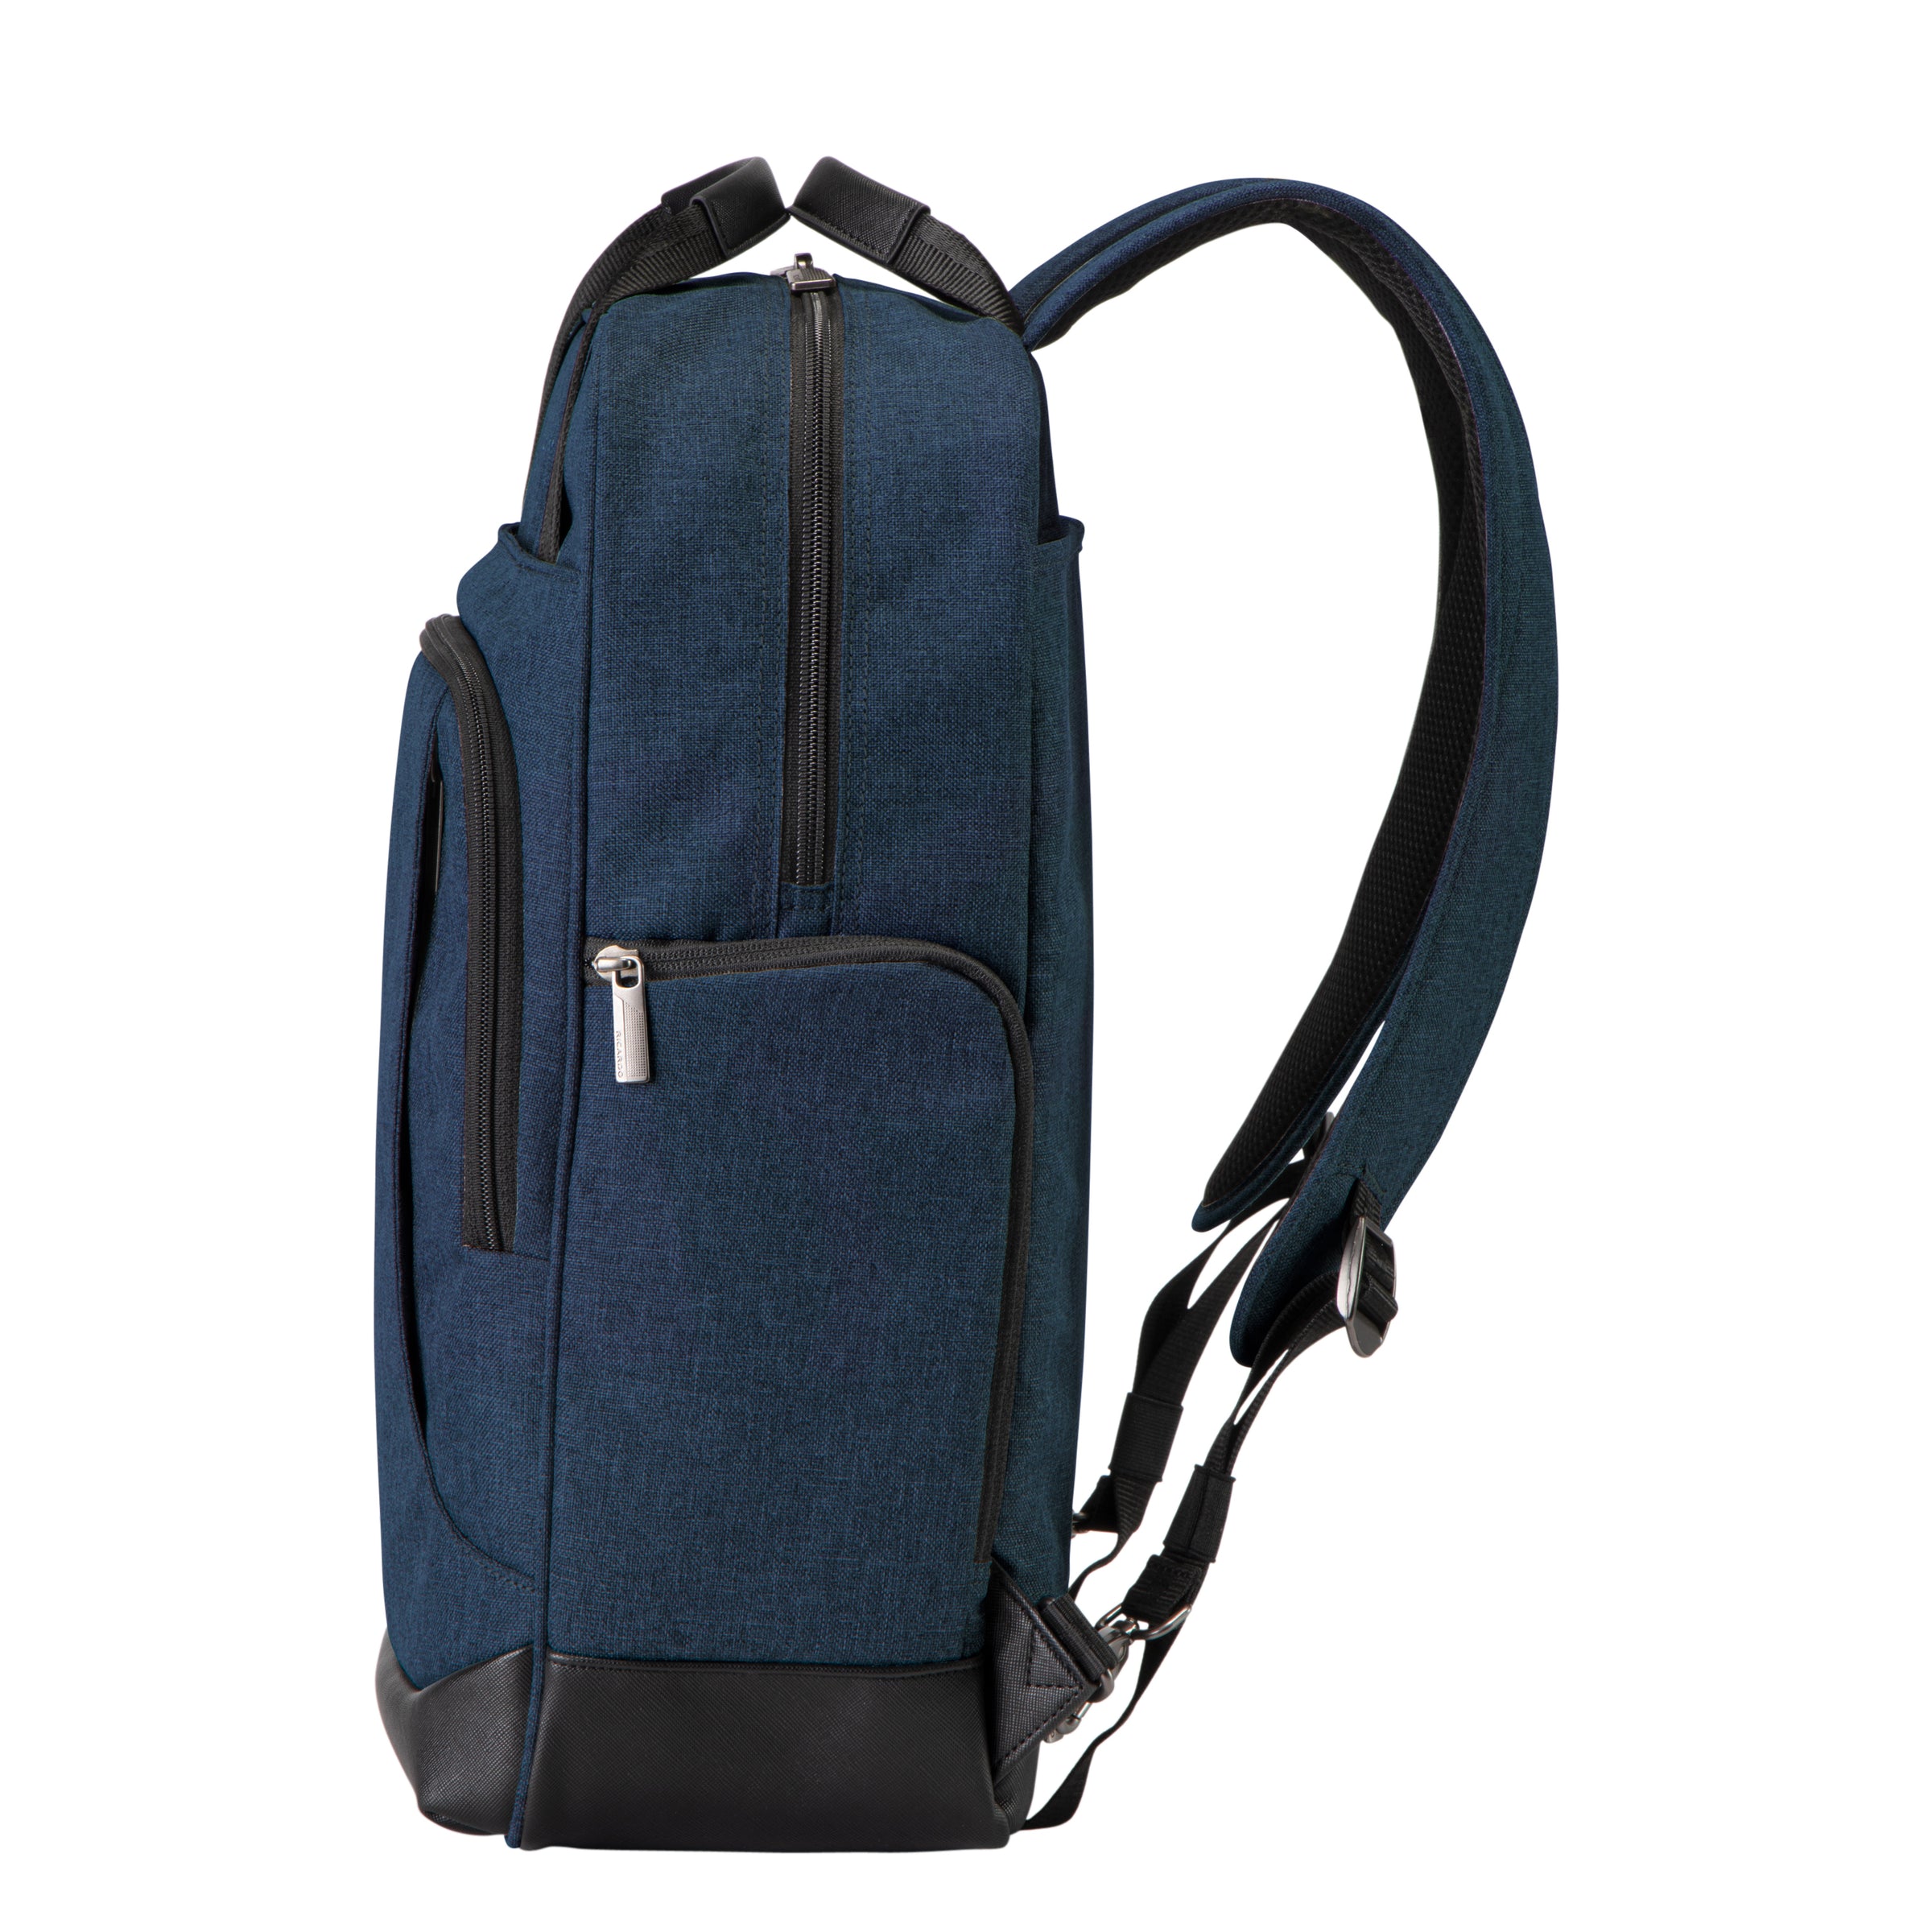 Malibu Bay 3.0 Softside Convertible Tech Backpack